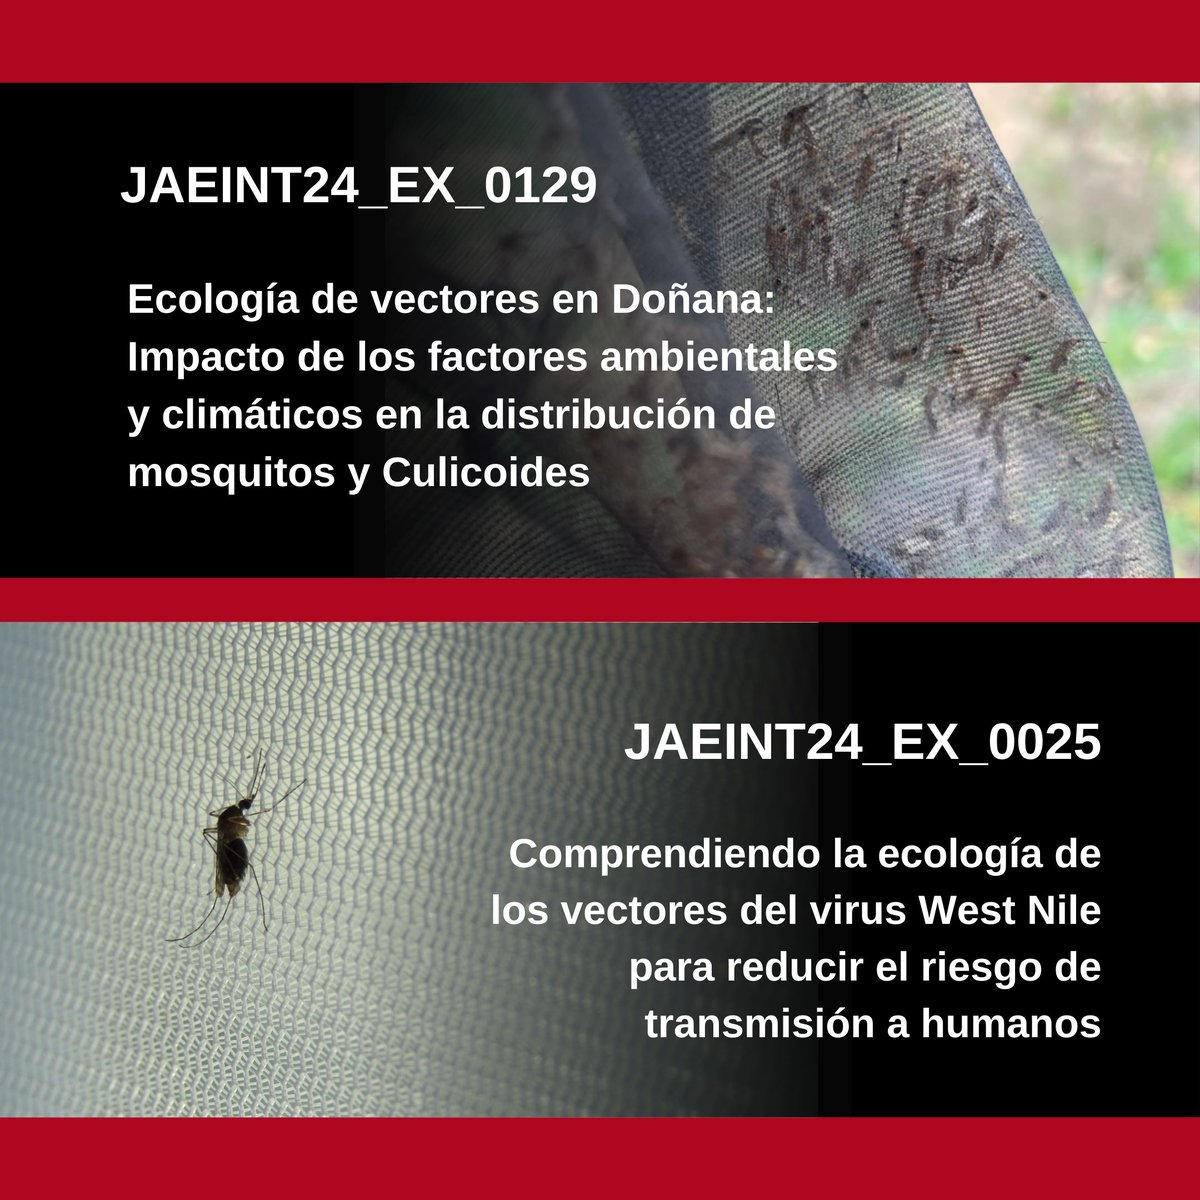 JAEINT24_EX_0129. Ecología de vectores en Doñana Investigadora: @M_Ferraguti JAEINT24_EX_0025. Comprendiendo la ecología de los vectores del virus West Nile Investigador: @FiguerolaLab